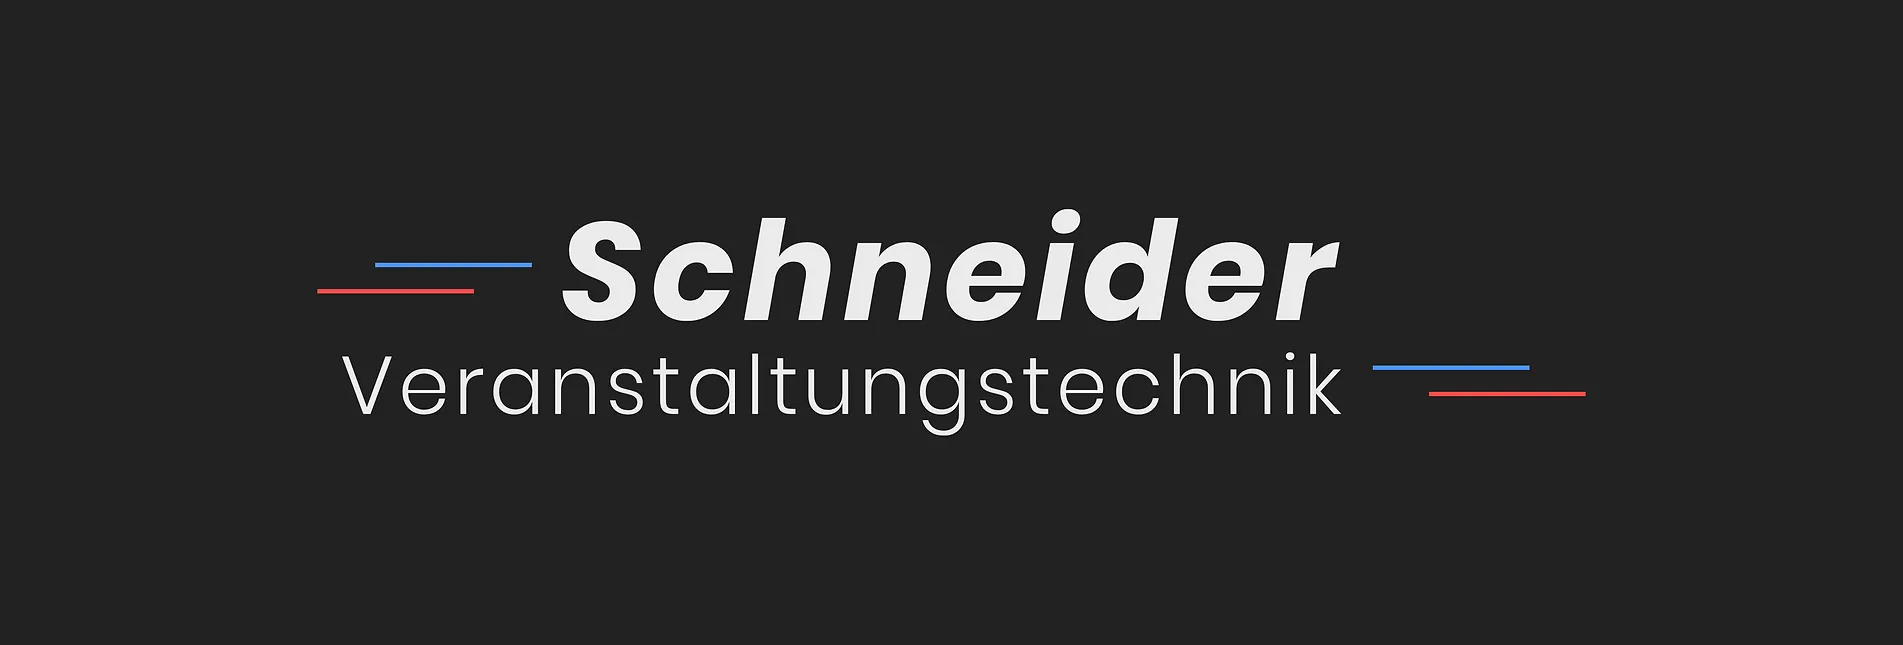 https://www.schneider-veranstaltungstechnik.com/